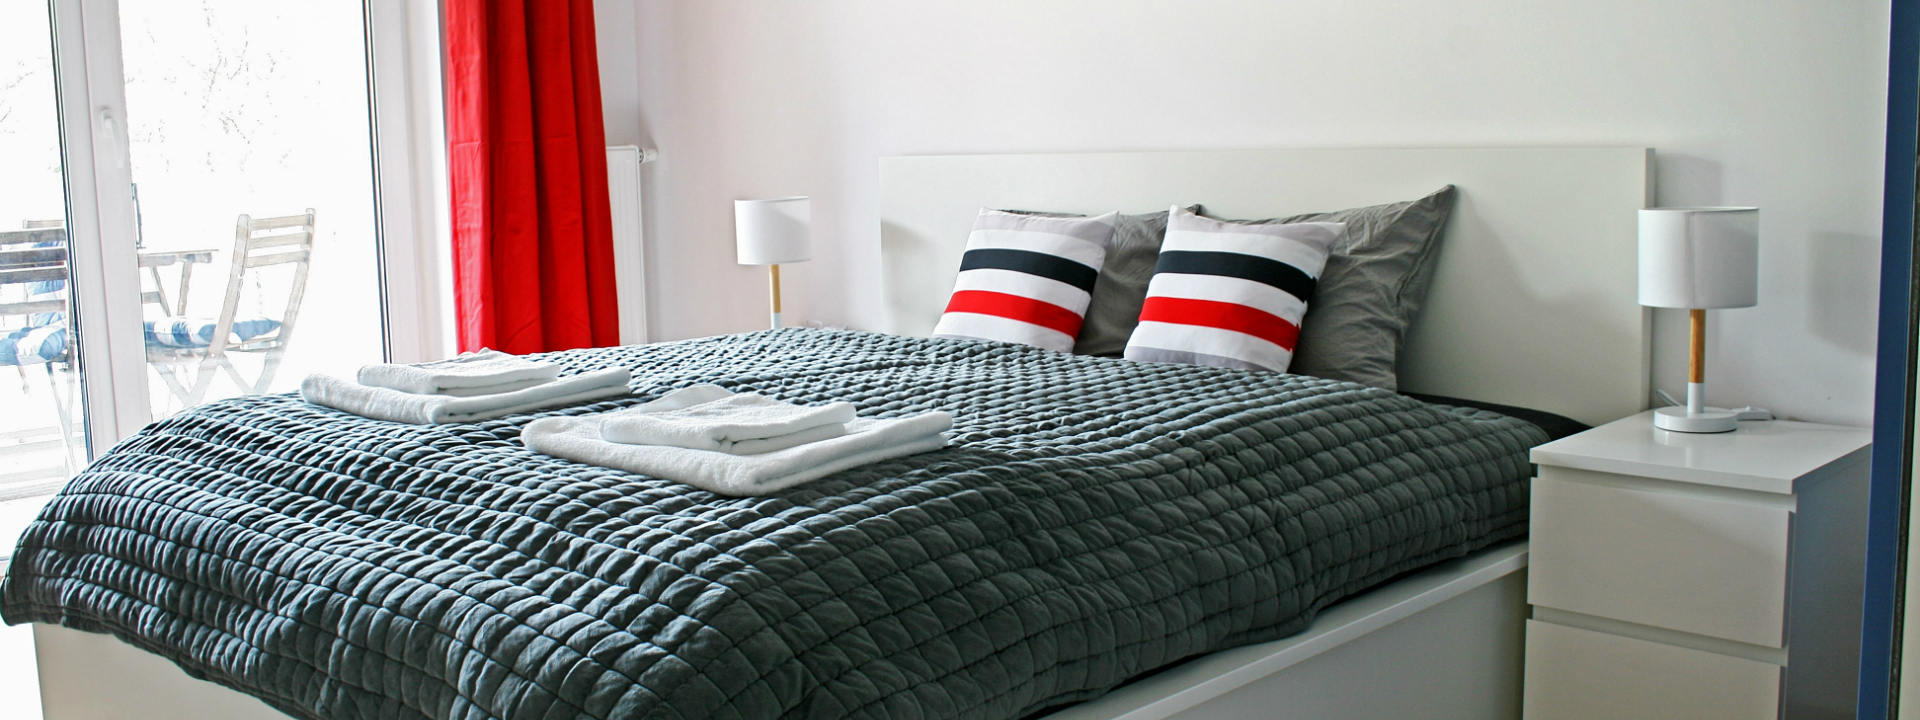 Apartament Portino w Kołobrzegu – sypialnia w stylu marynistycznym z 2-osobowym łóżkiem